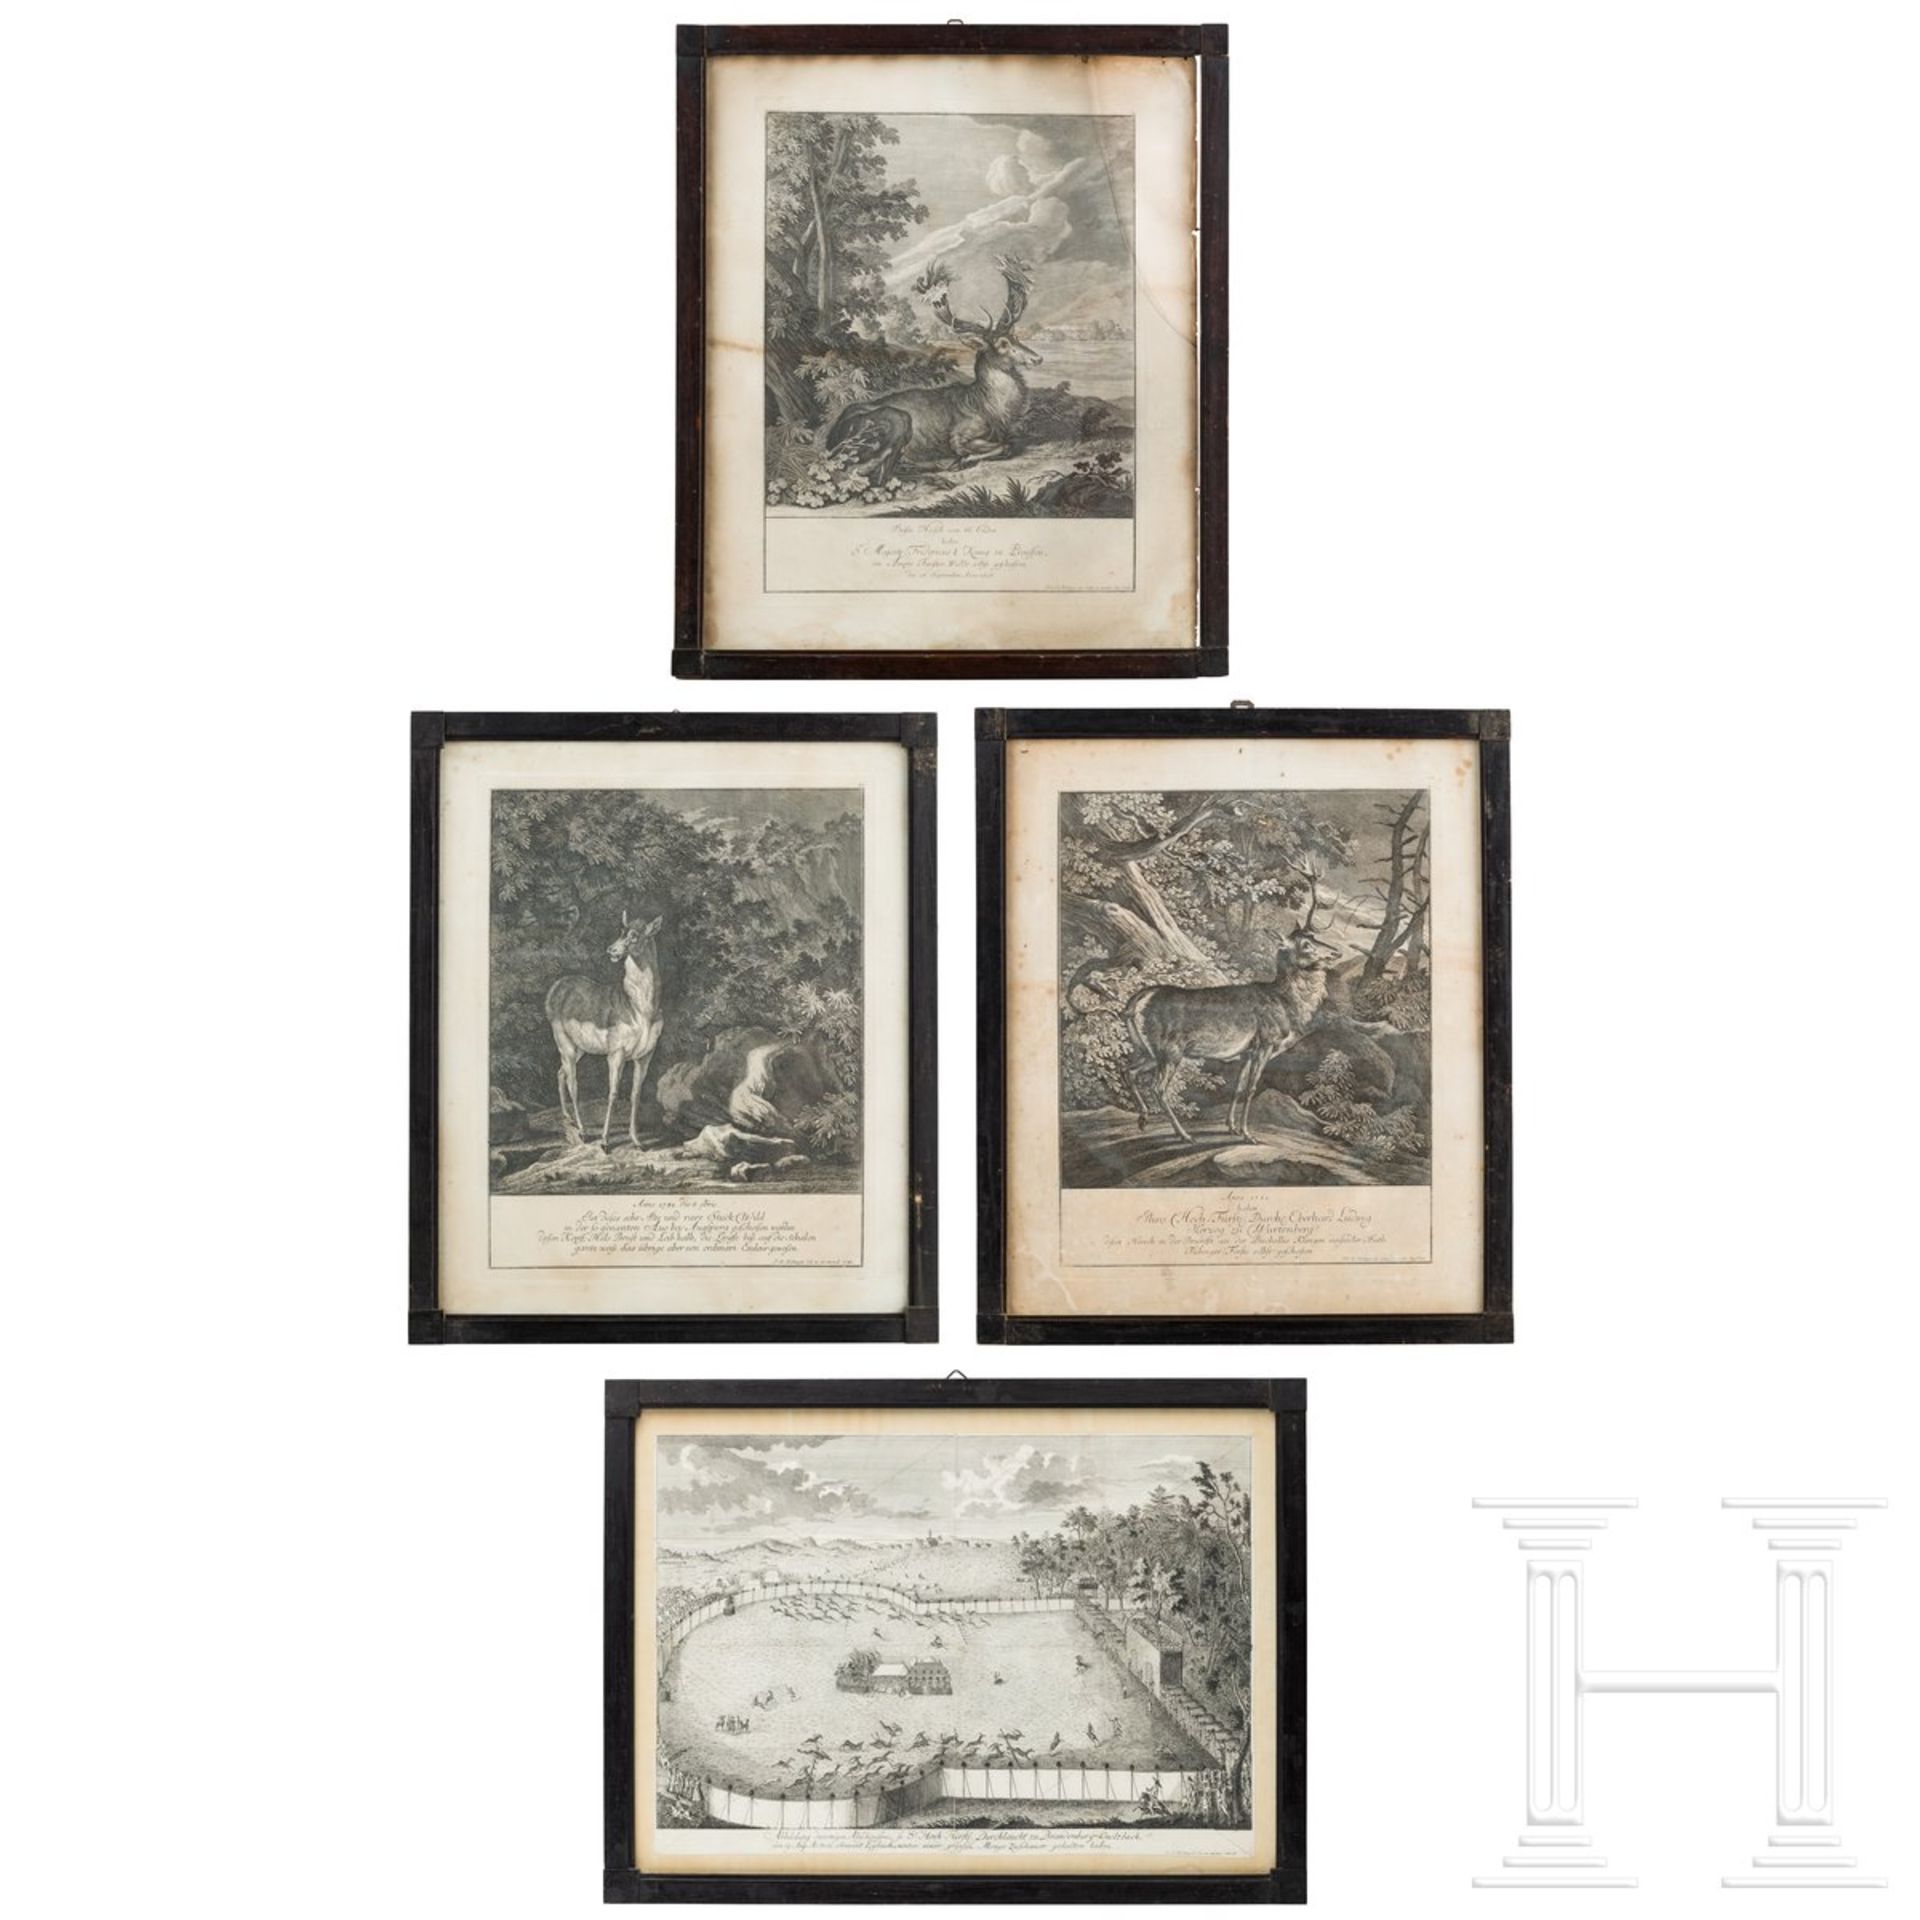 Vier jagdliche Stiche, davon drei von Johann Elias Ridinger, Augsburg, um 1760